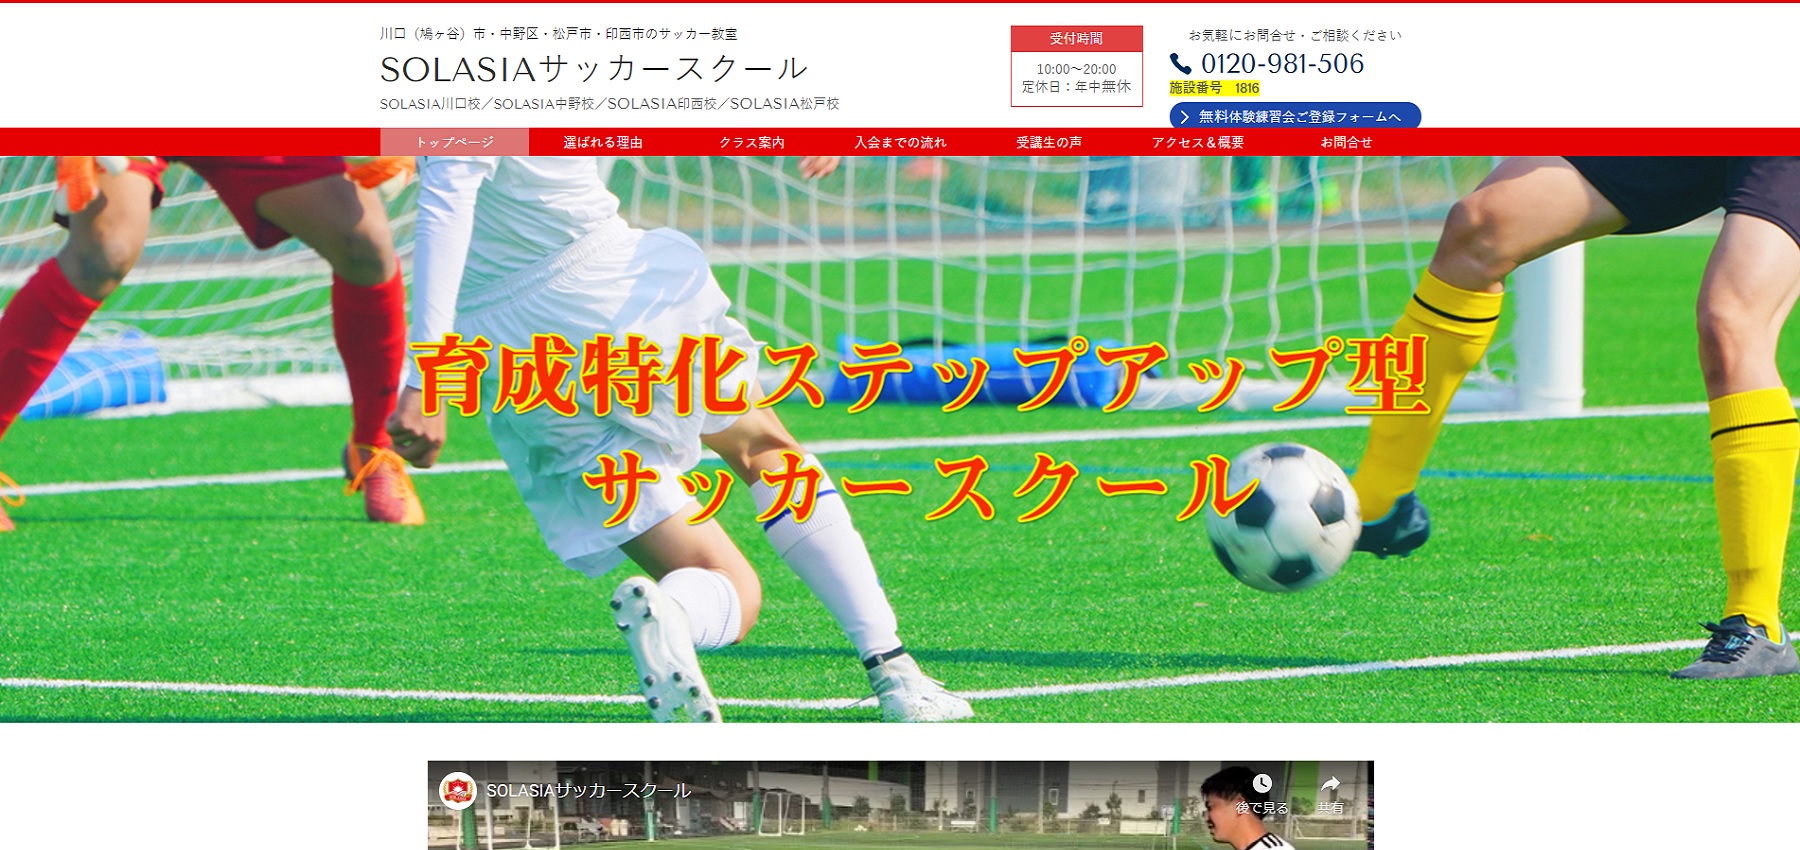 サッカースクールを松戸 流山でお探しの方必見 選りすぐりのサッカースクールをご紹介しています サッカースクールナビ